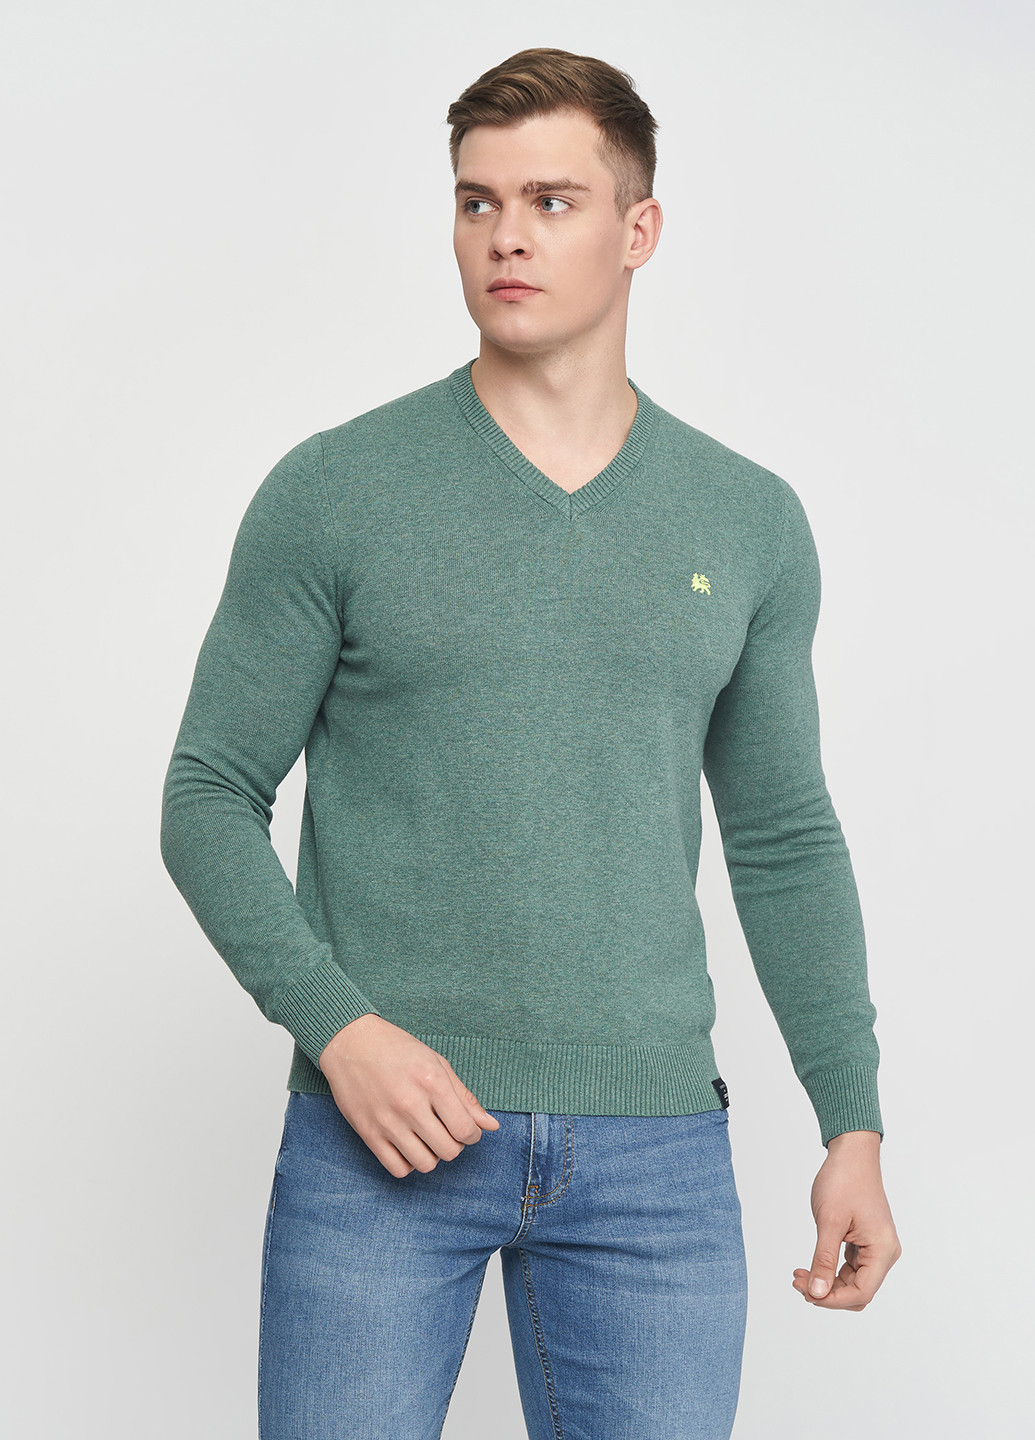 Зеленый демисезонный пуловер пуловер Lerros